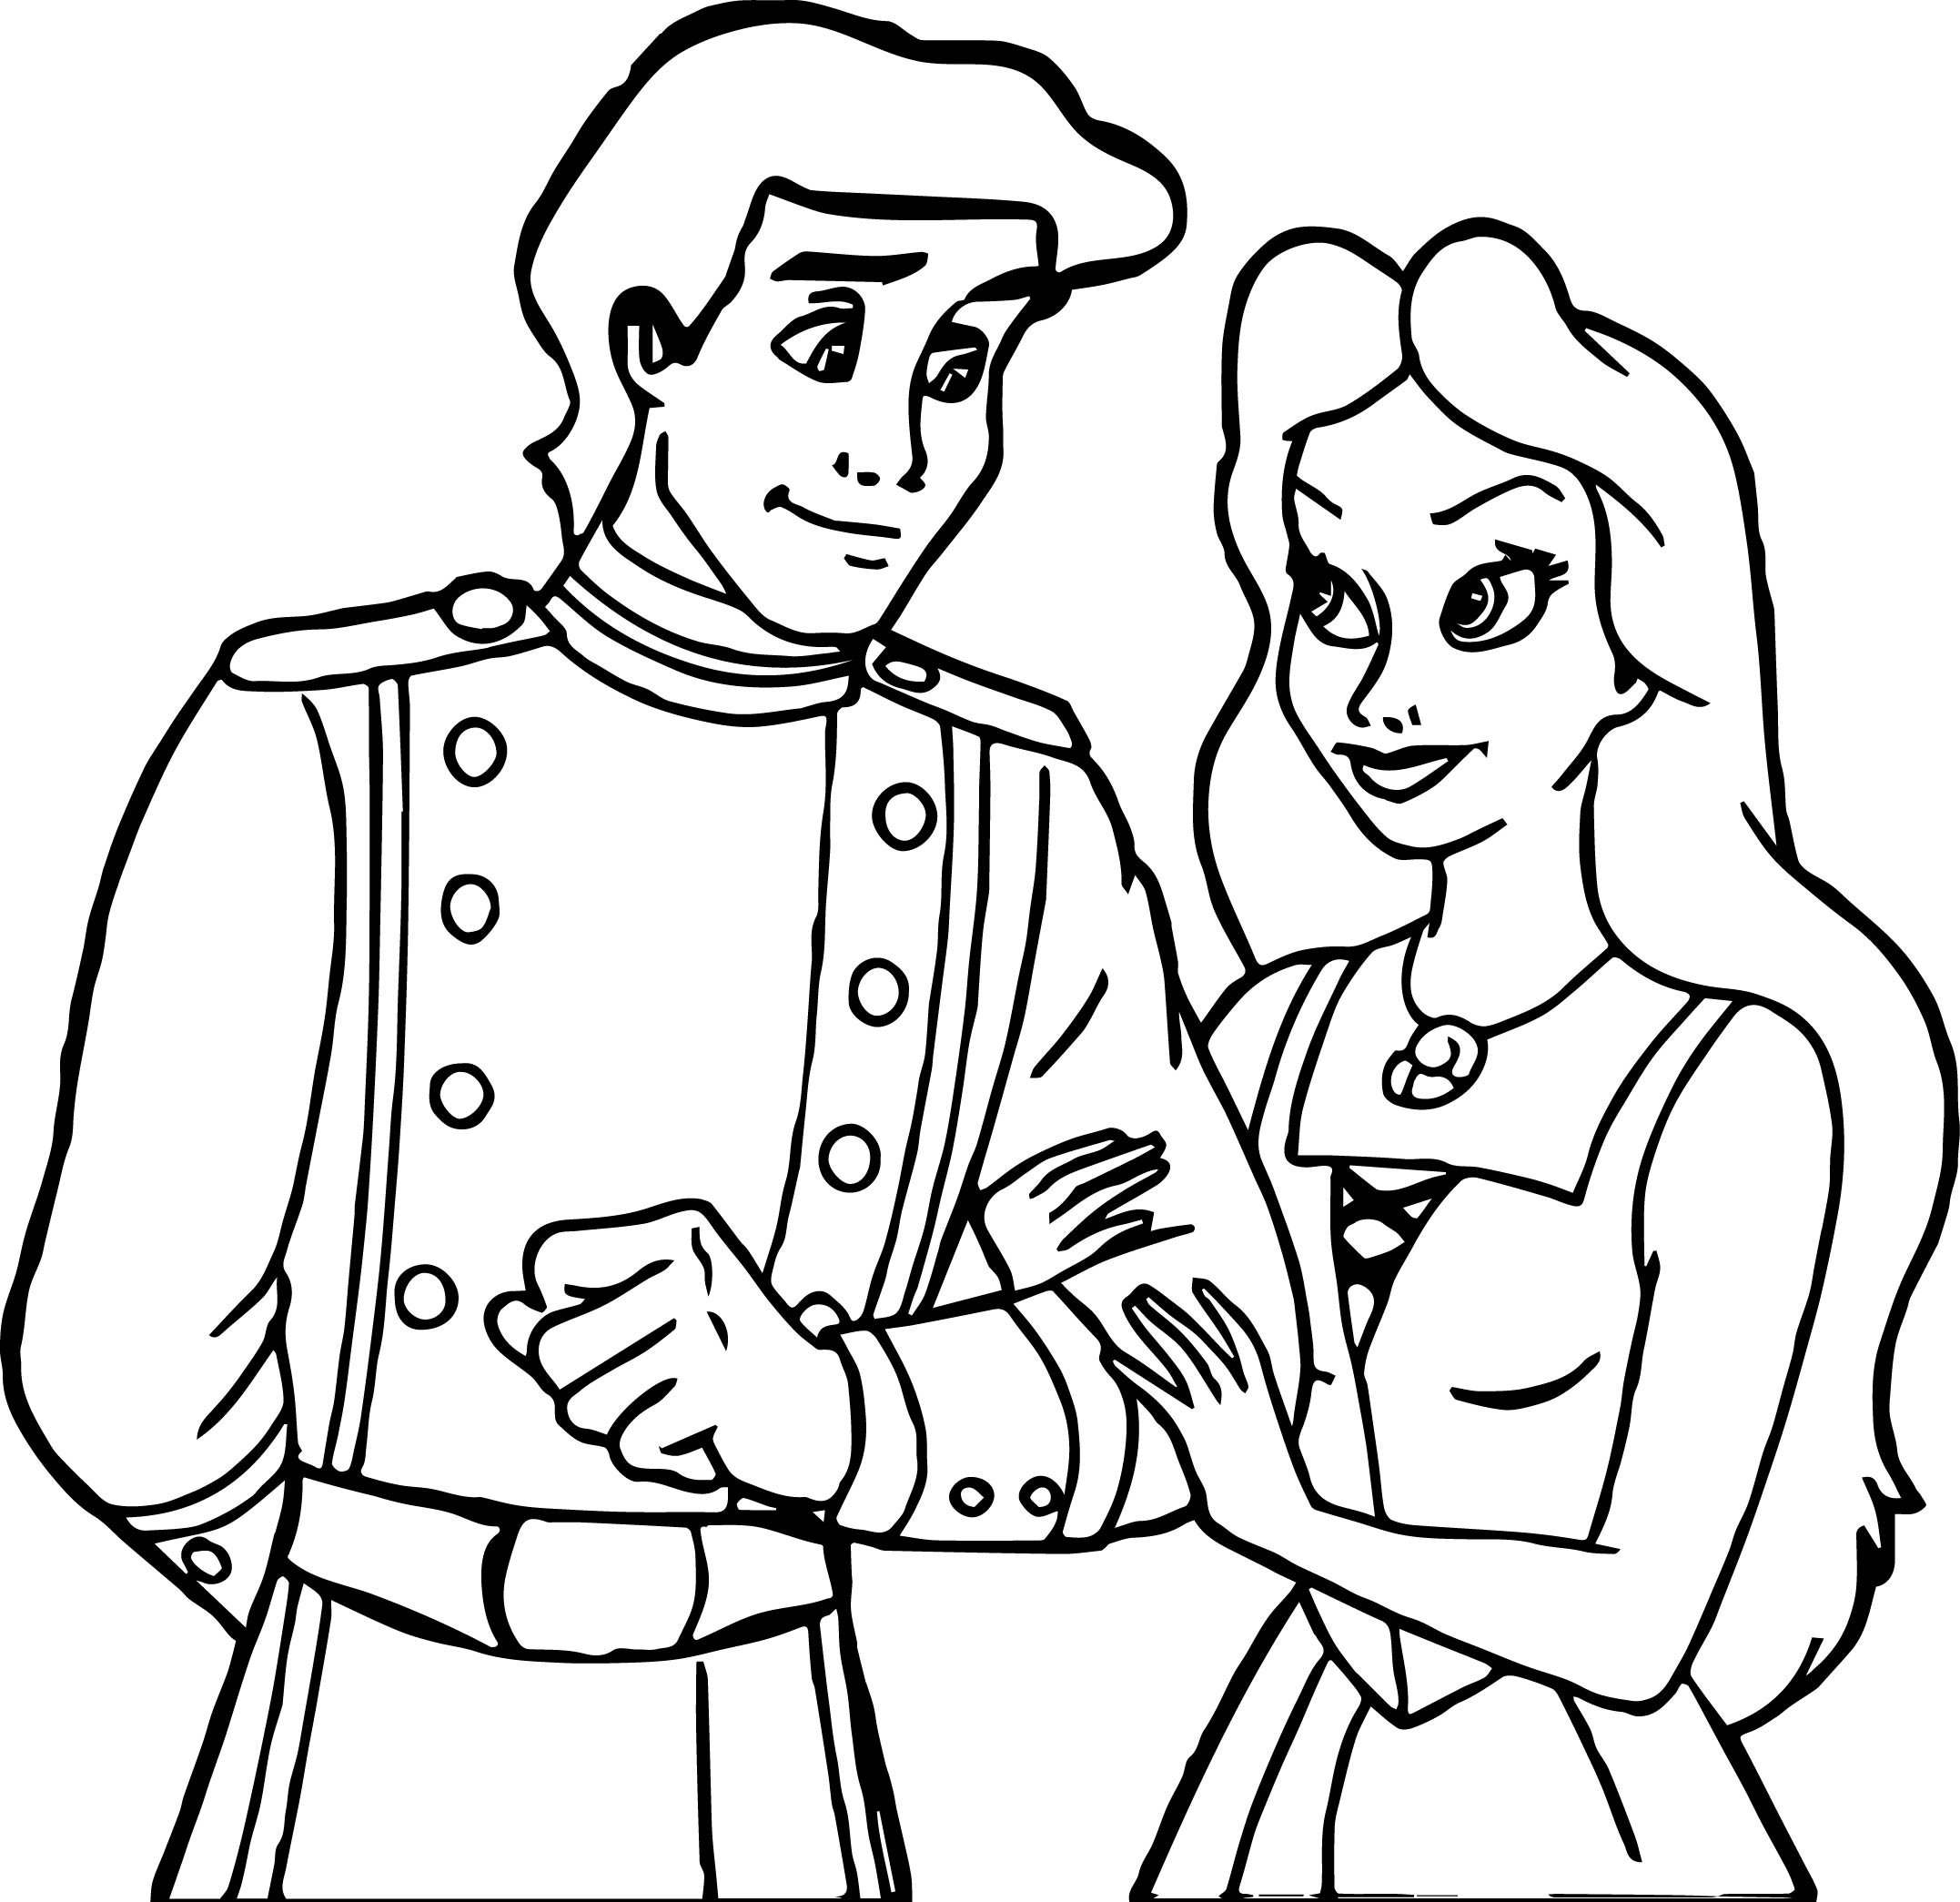 Принц и принцесса рисунок